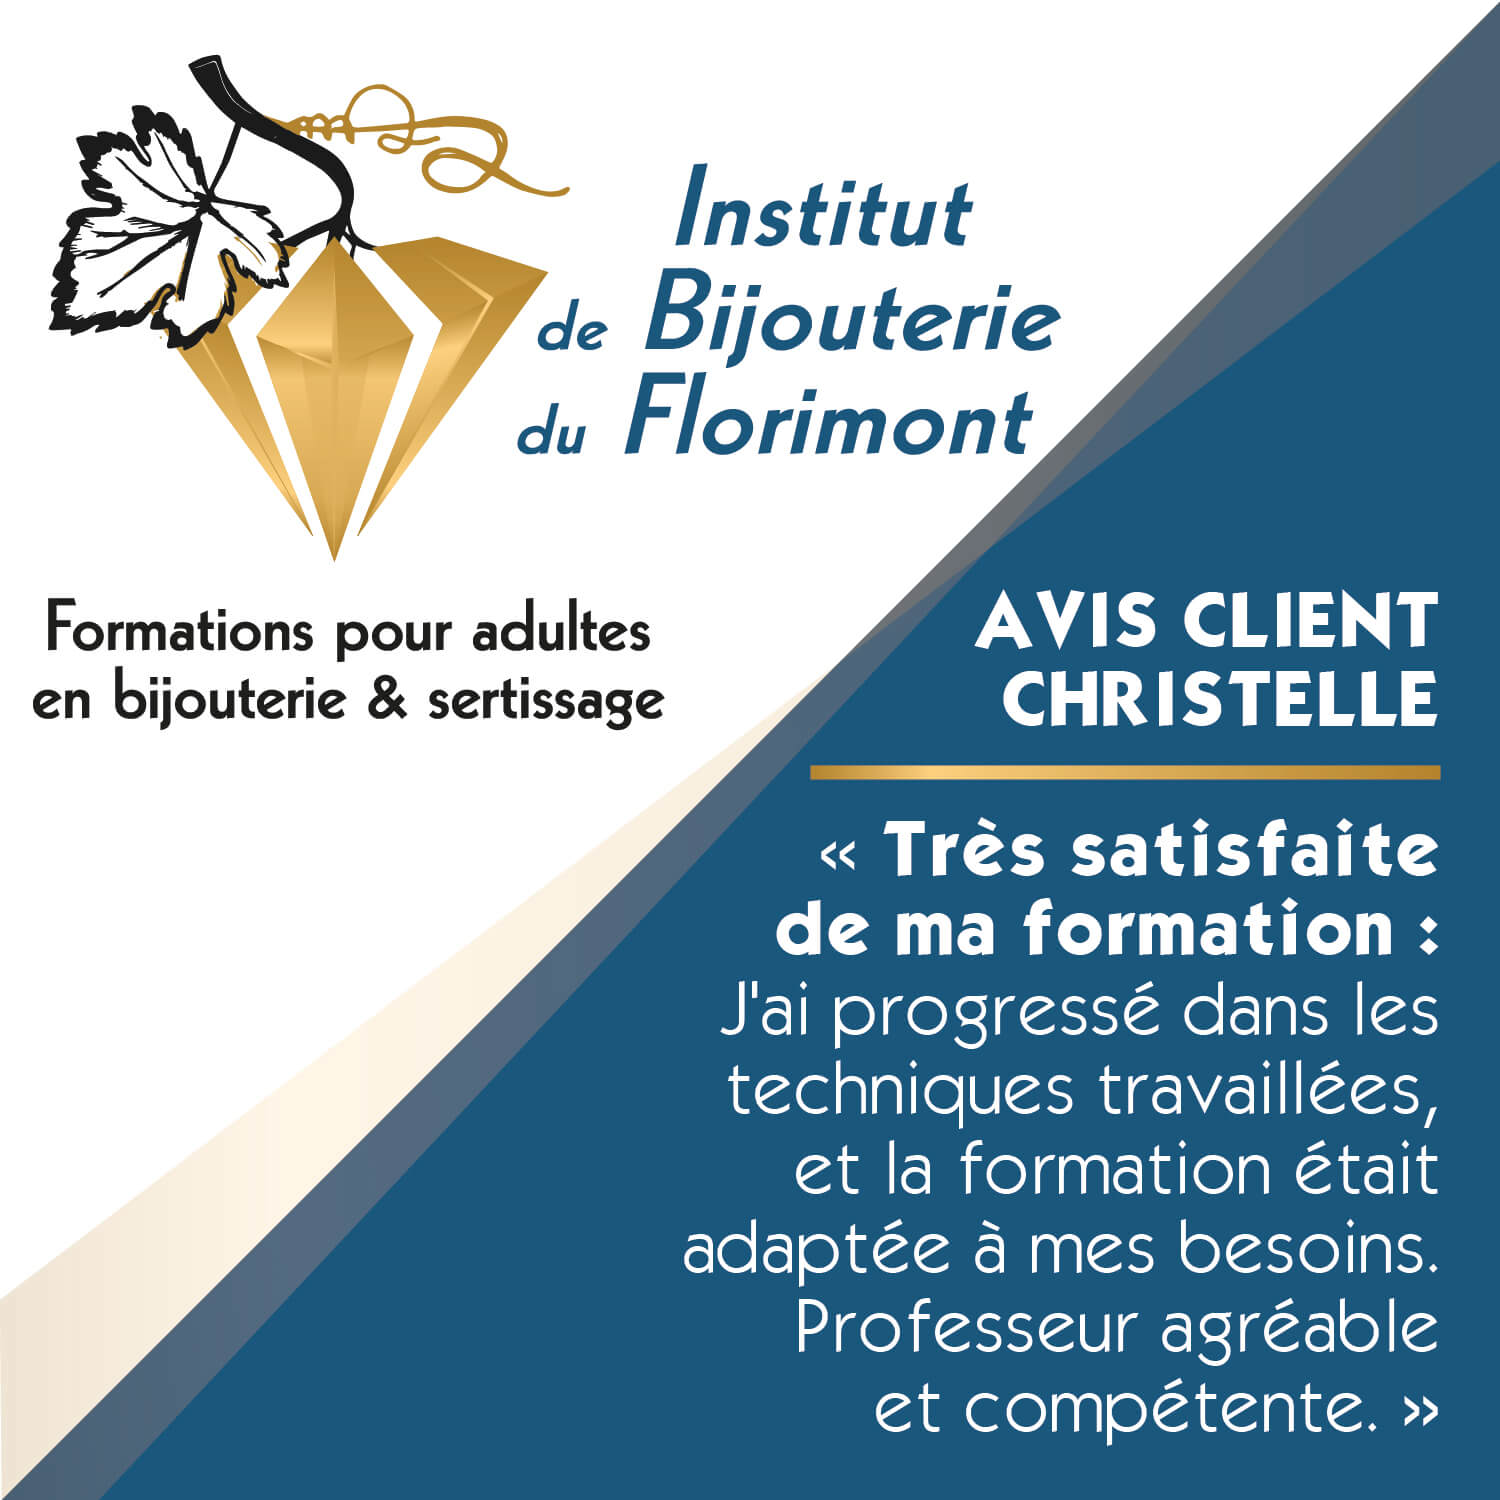 IBF - Avis client Christelle - Institut de Bijouterie du Florimont